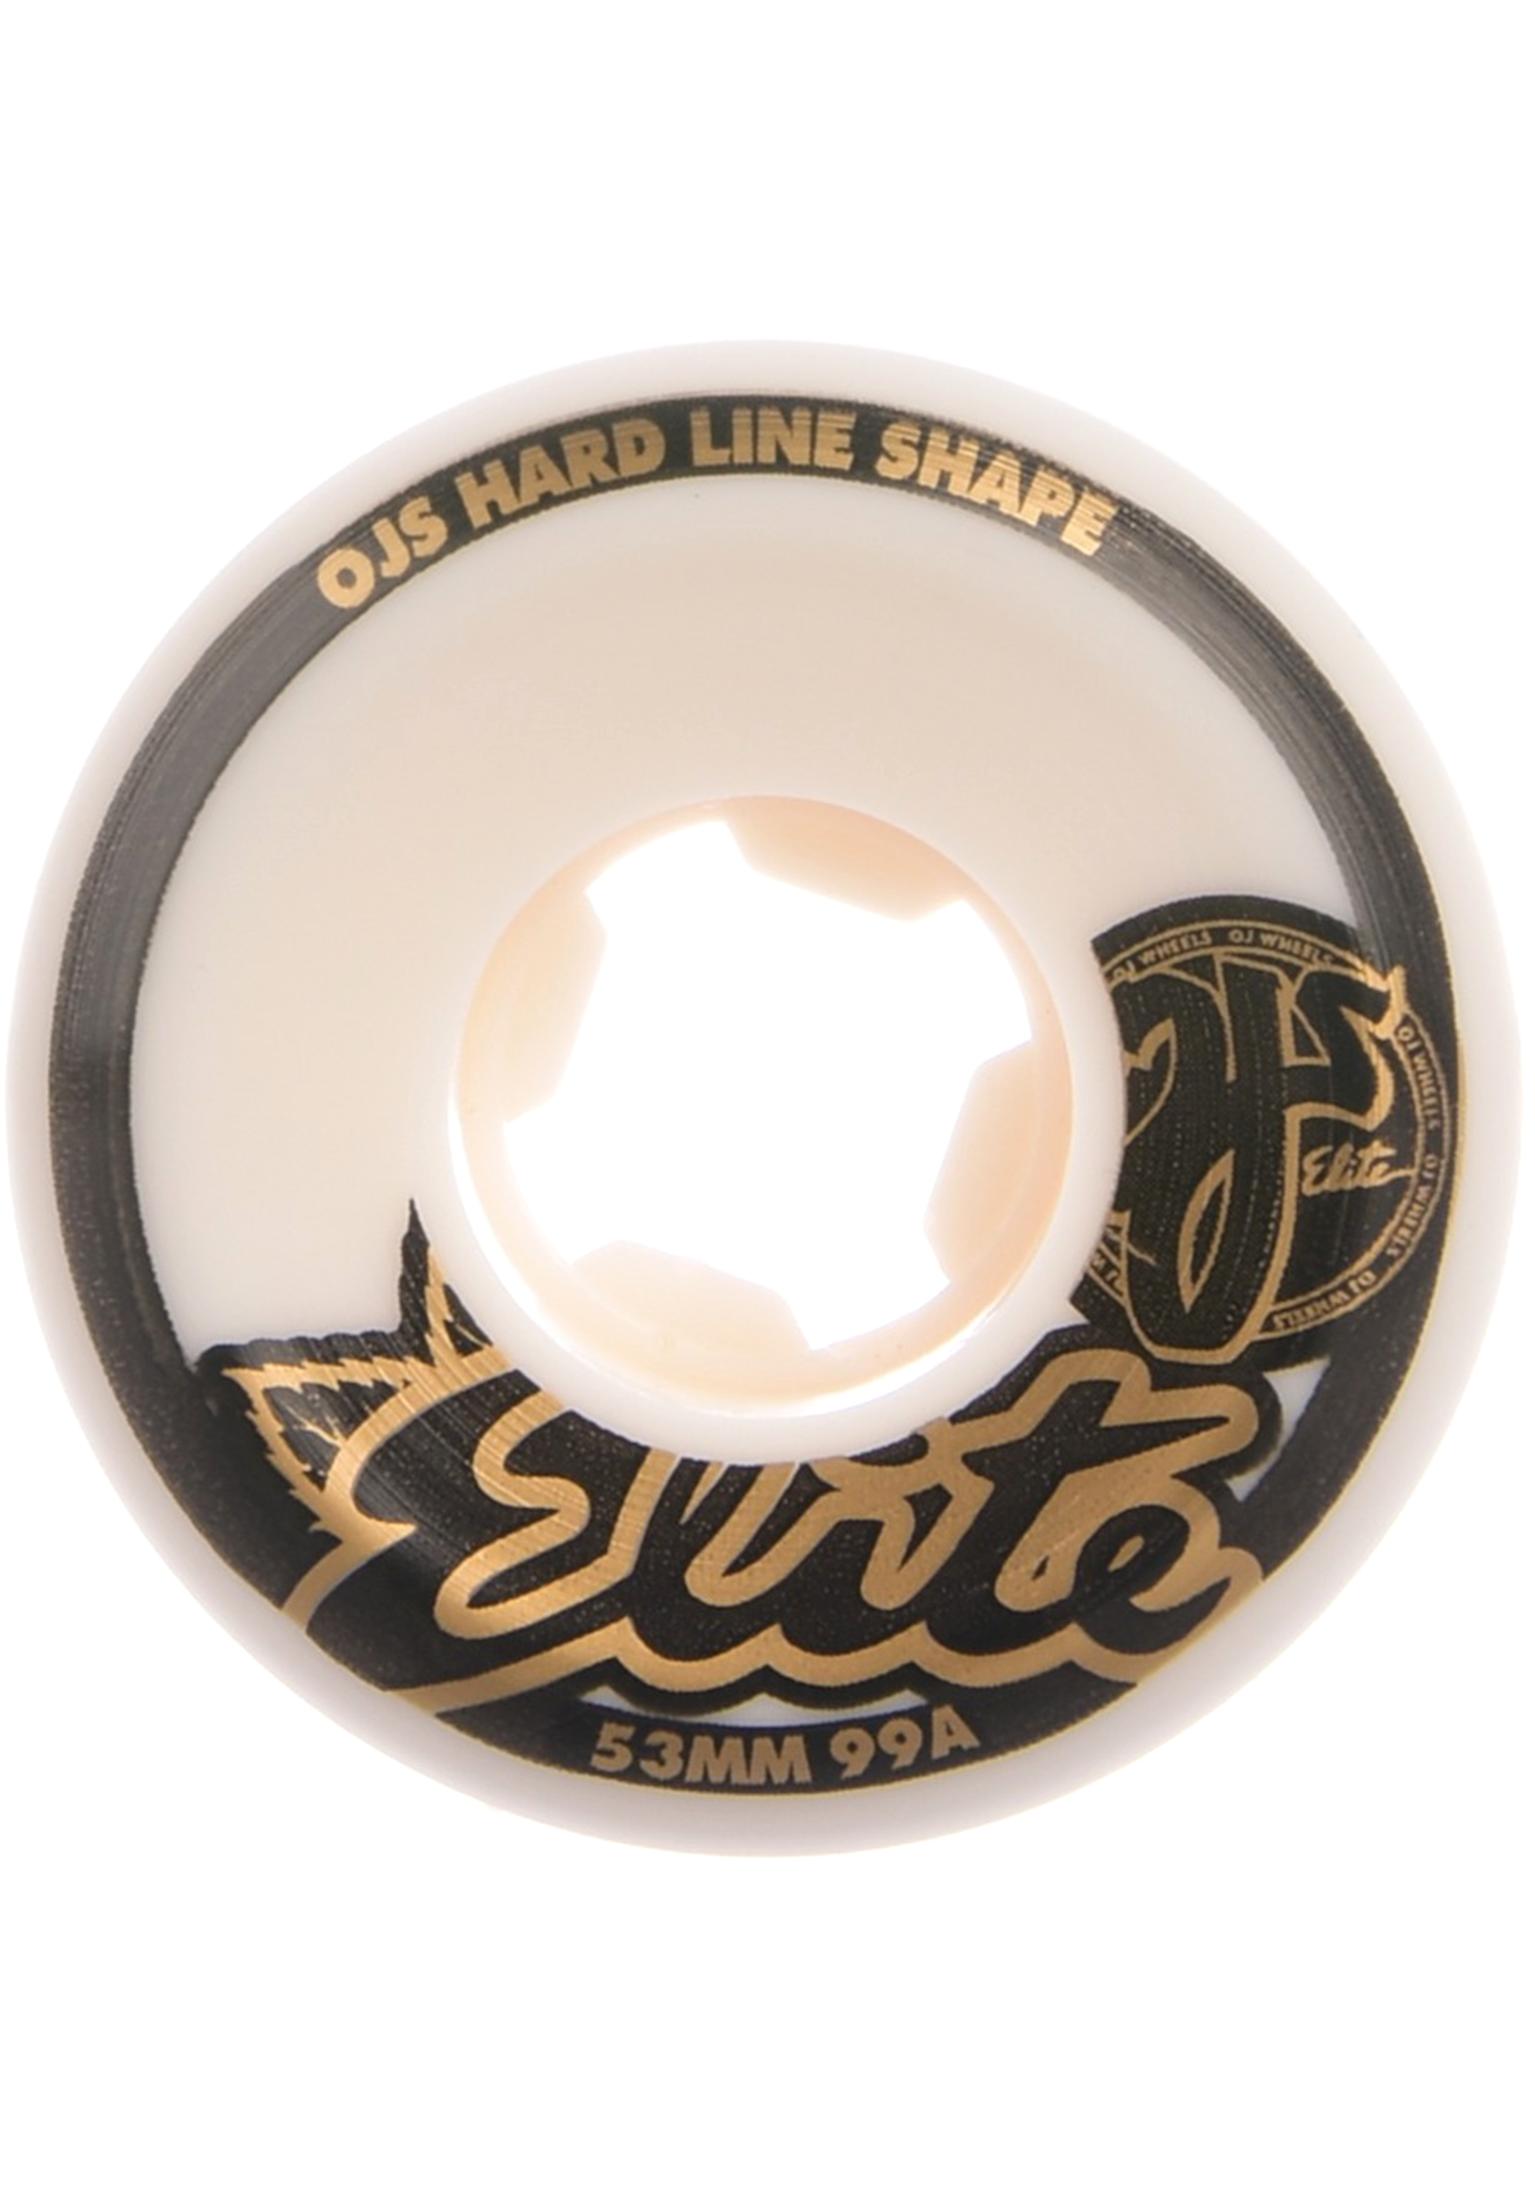 OJ Wheels 55mm Elite Hardline Wide 99A skateboardwielen white